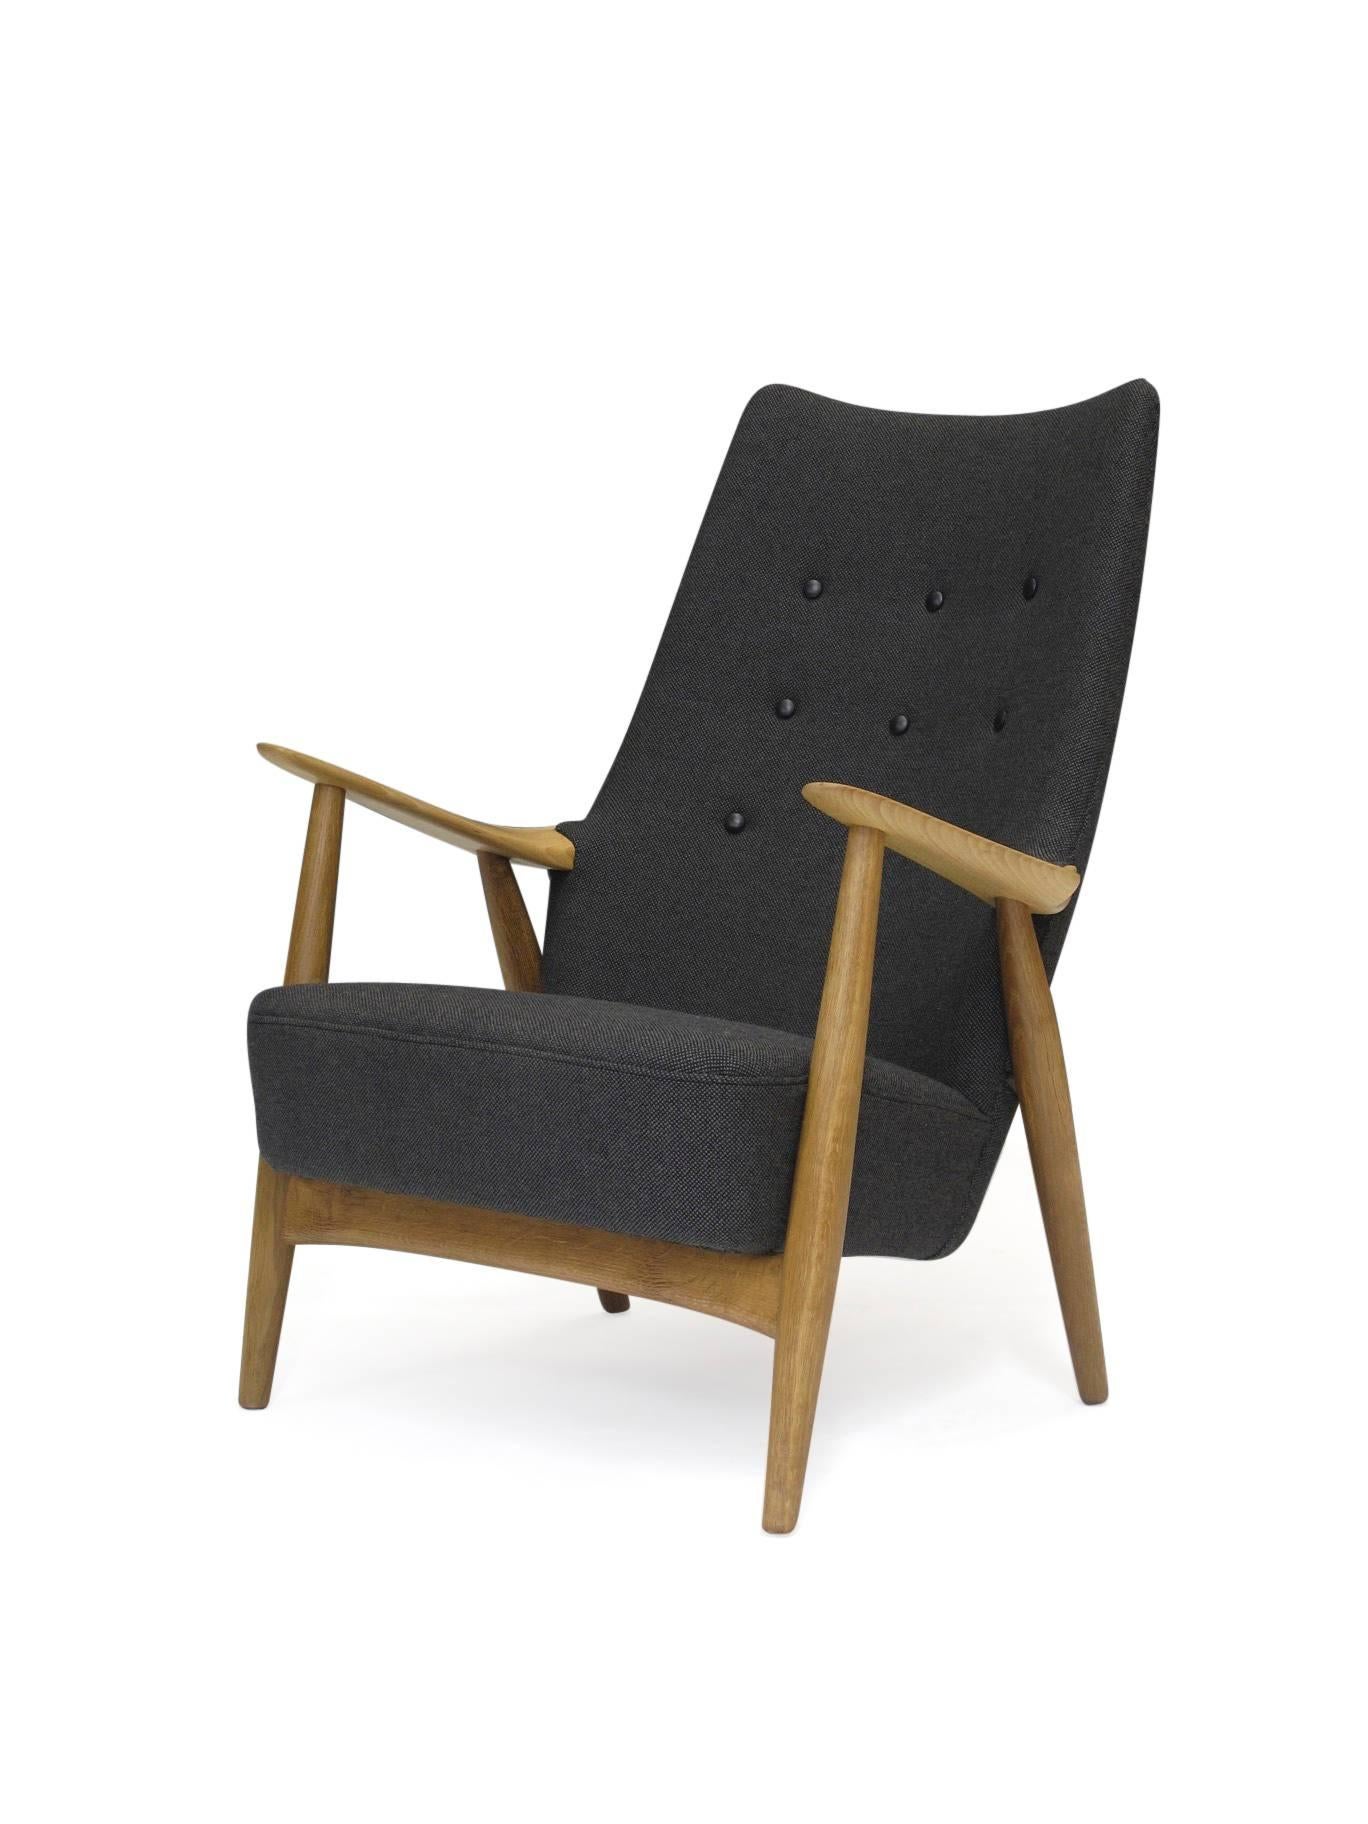 Danish Hans Wegner High Back Lounge Chair